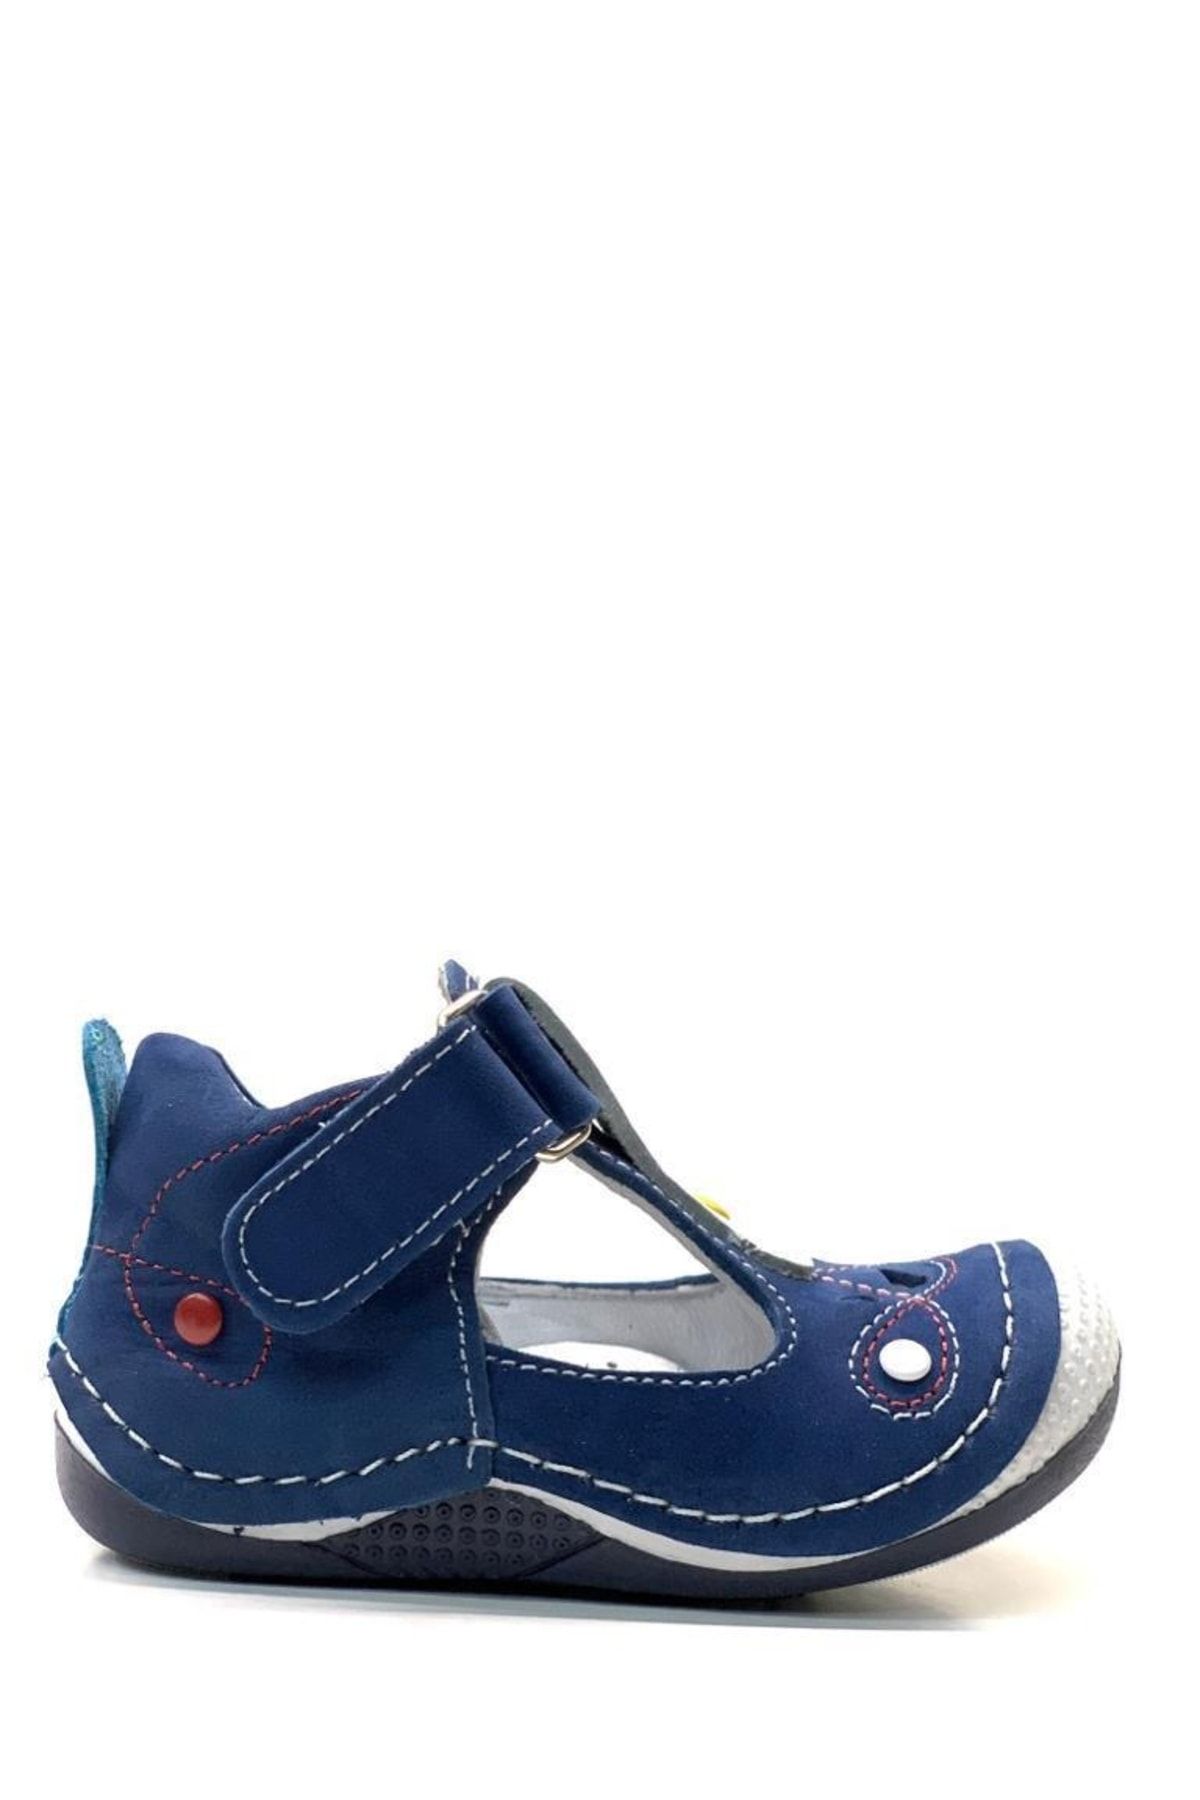 Tuğba Ortopedi 371 Hafif Ortopedik % 100 Hakiki Deri Erkek Bebek Mavi/beyaz Ilk Adım Ayakkabı